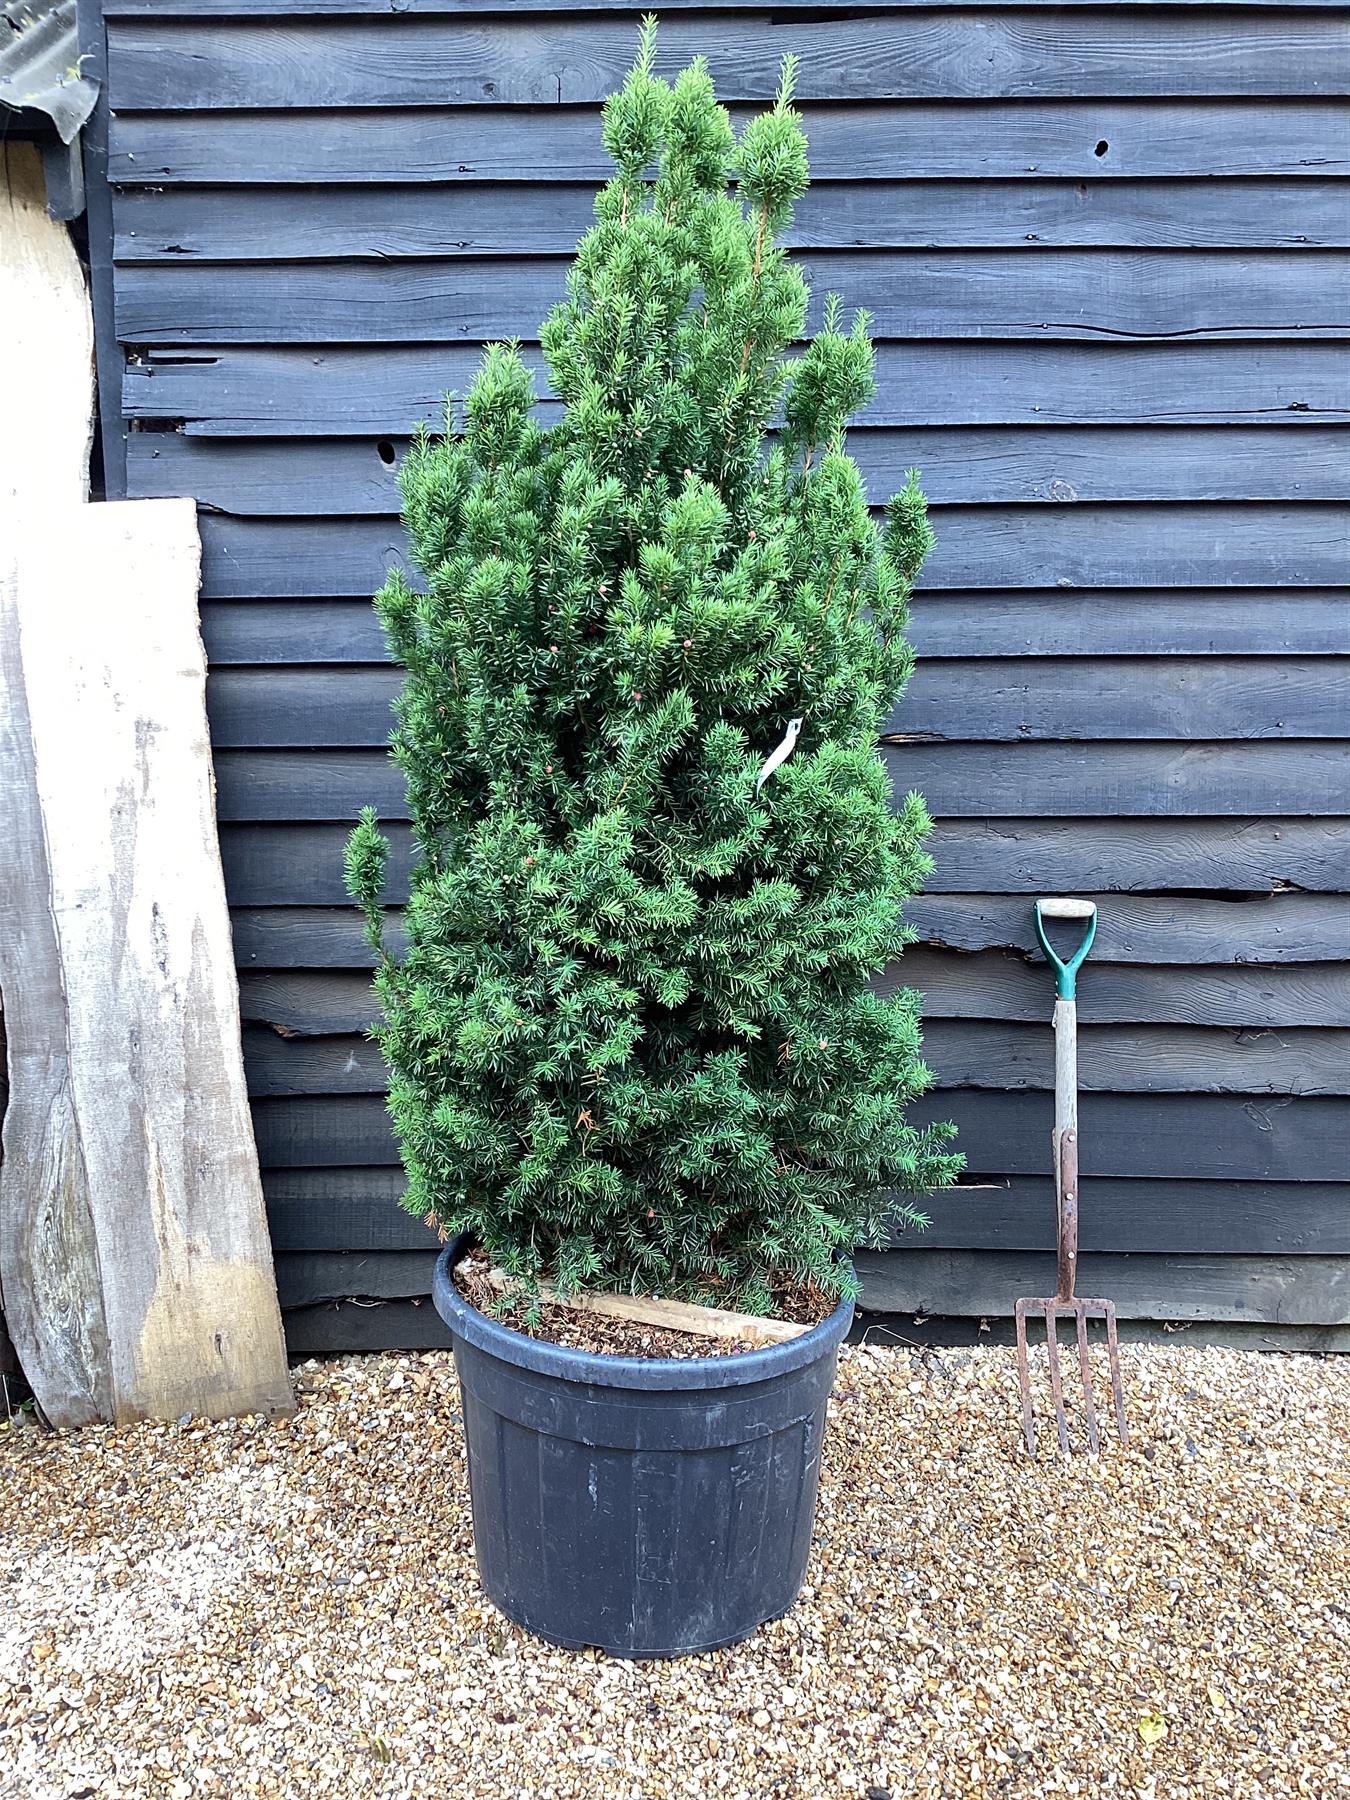 Taxus Media 'Hillii' | Yew Tree/Large Shrub - Upright Taxus - Bushy - Height 160-180cm - 130lt